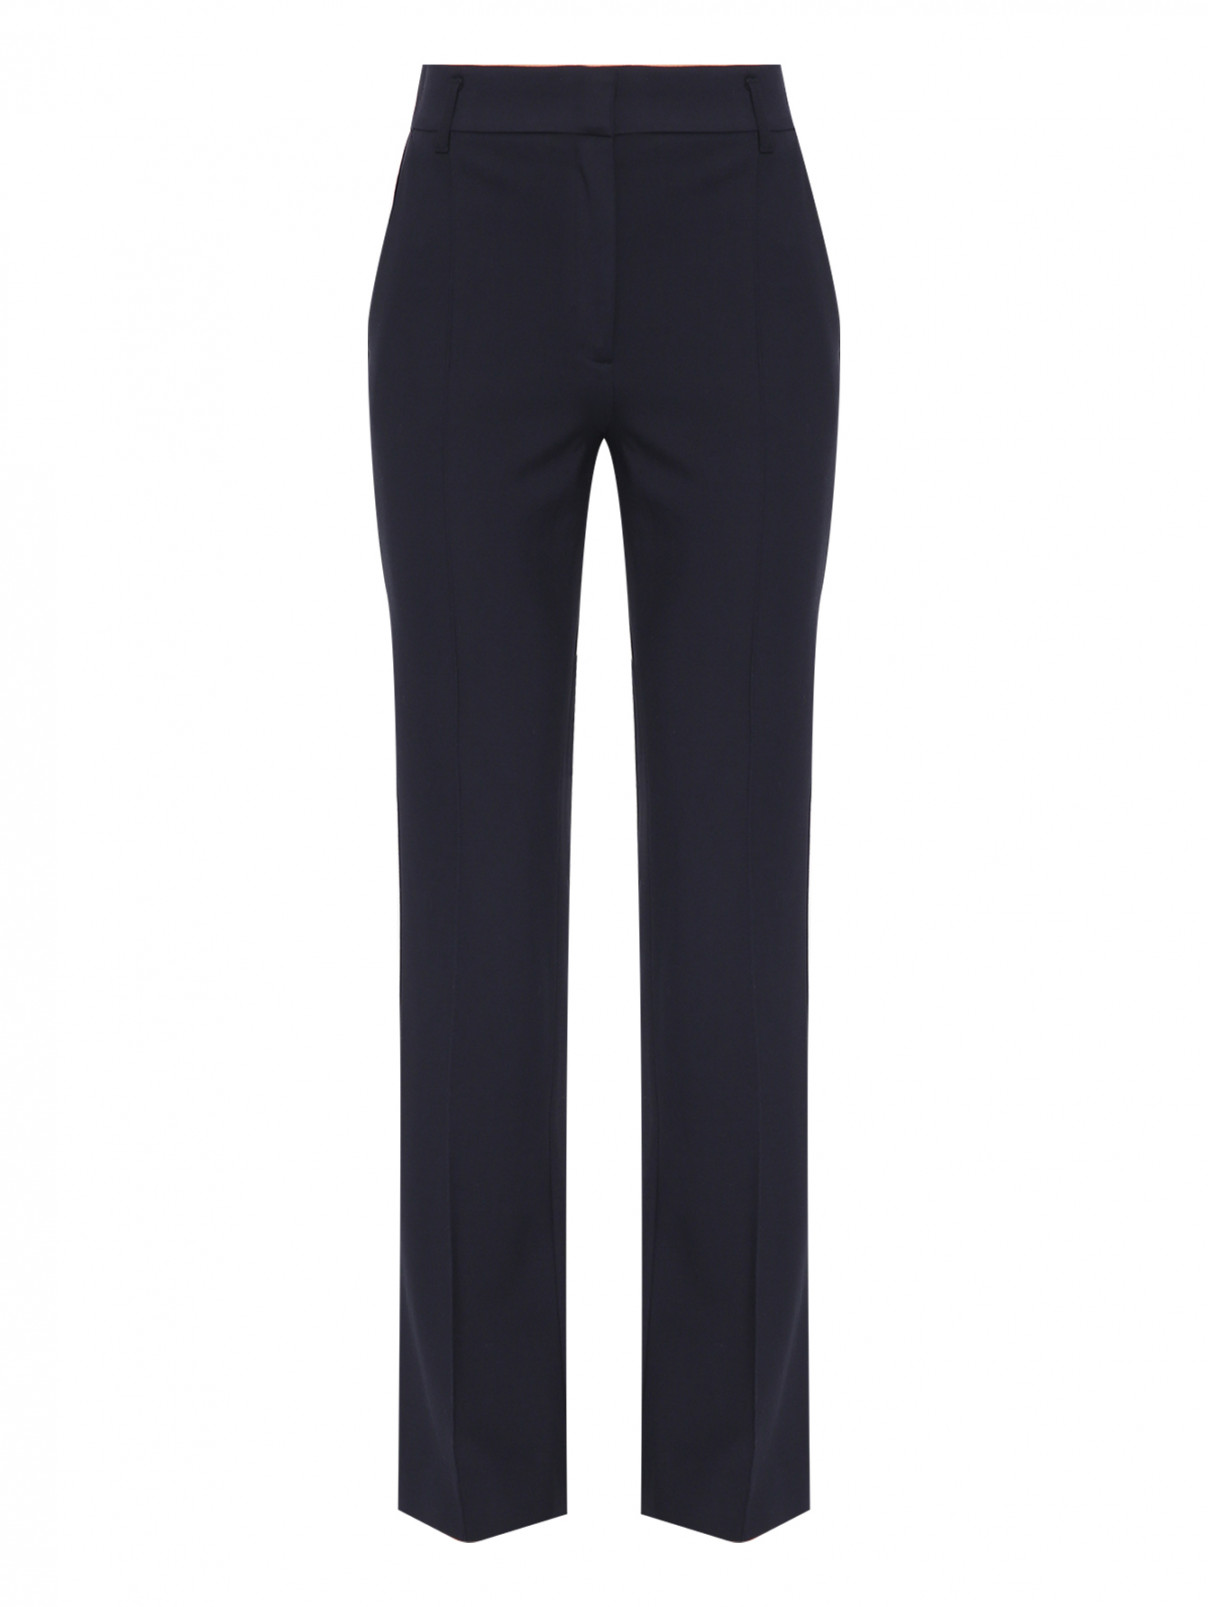 Трикотажные брюки-клеш со стрелками Dorothee Schumacher  –  Общий вид  – Цвет:  Синий